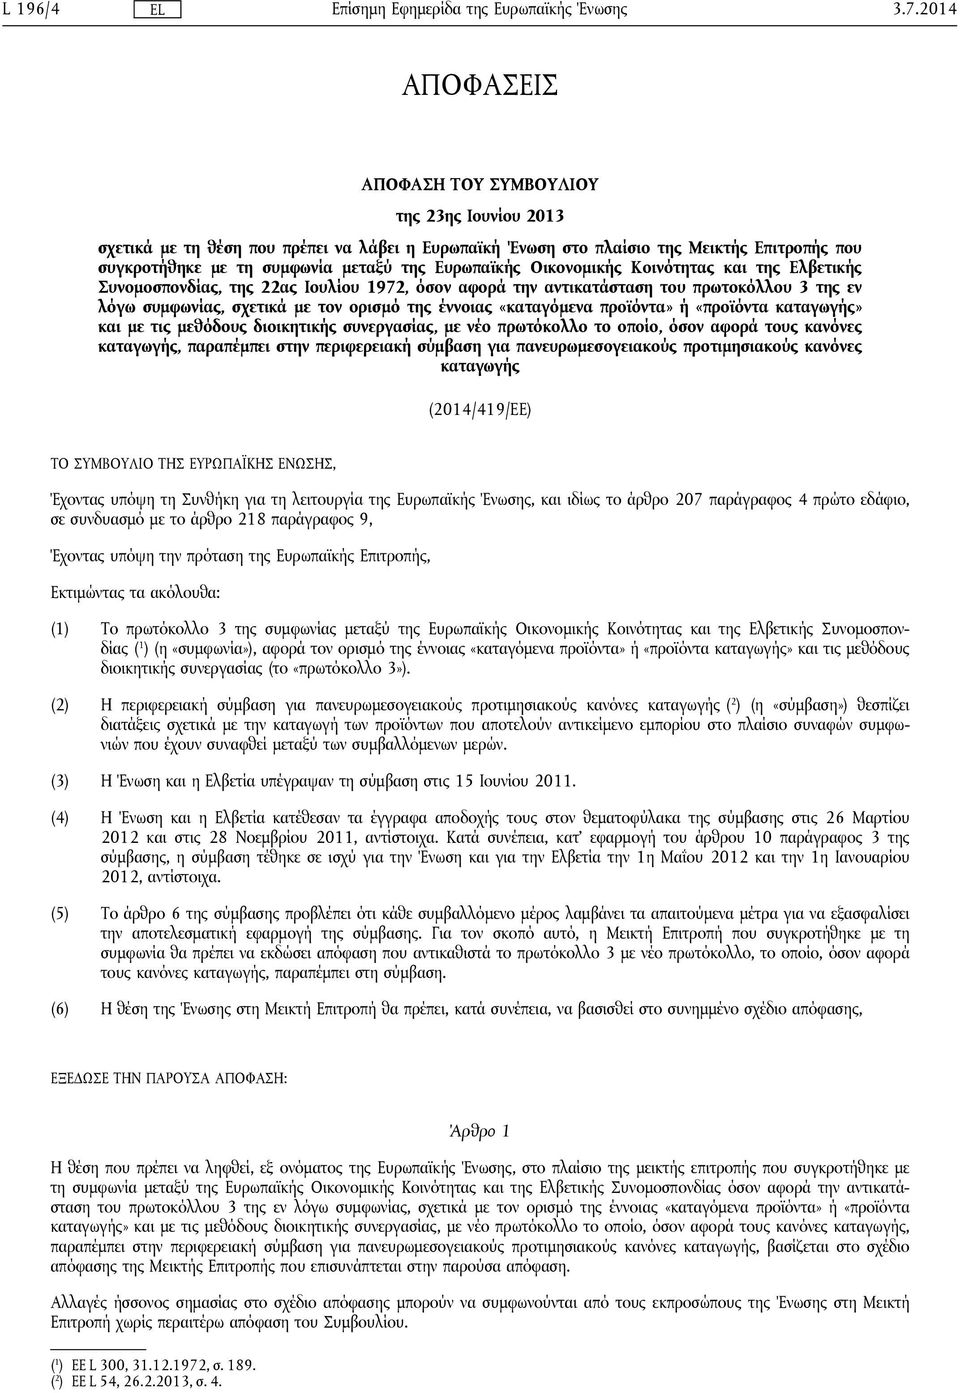 Ευρωπαϊκής Οικονομικής Κοινότητας και της Ελβετικής Συνομοσπονδίας, της 22ας Ιουλίου 1972, όσον αφορά την αντικατάσταση του πρωτοκόλλου 3 της εν λόγω συμφωνίας, σχετικά με τον ορισμό της έννοιας